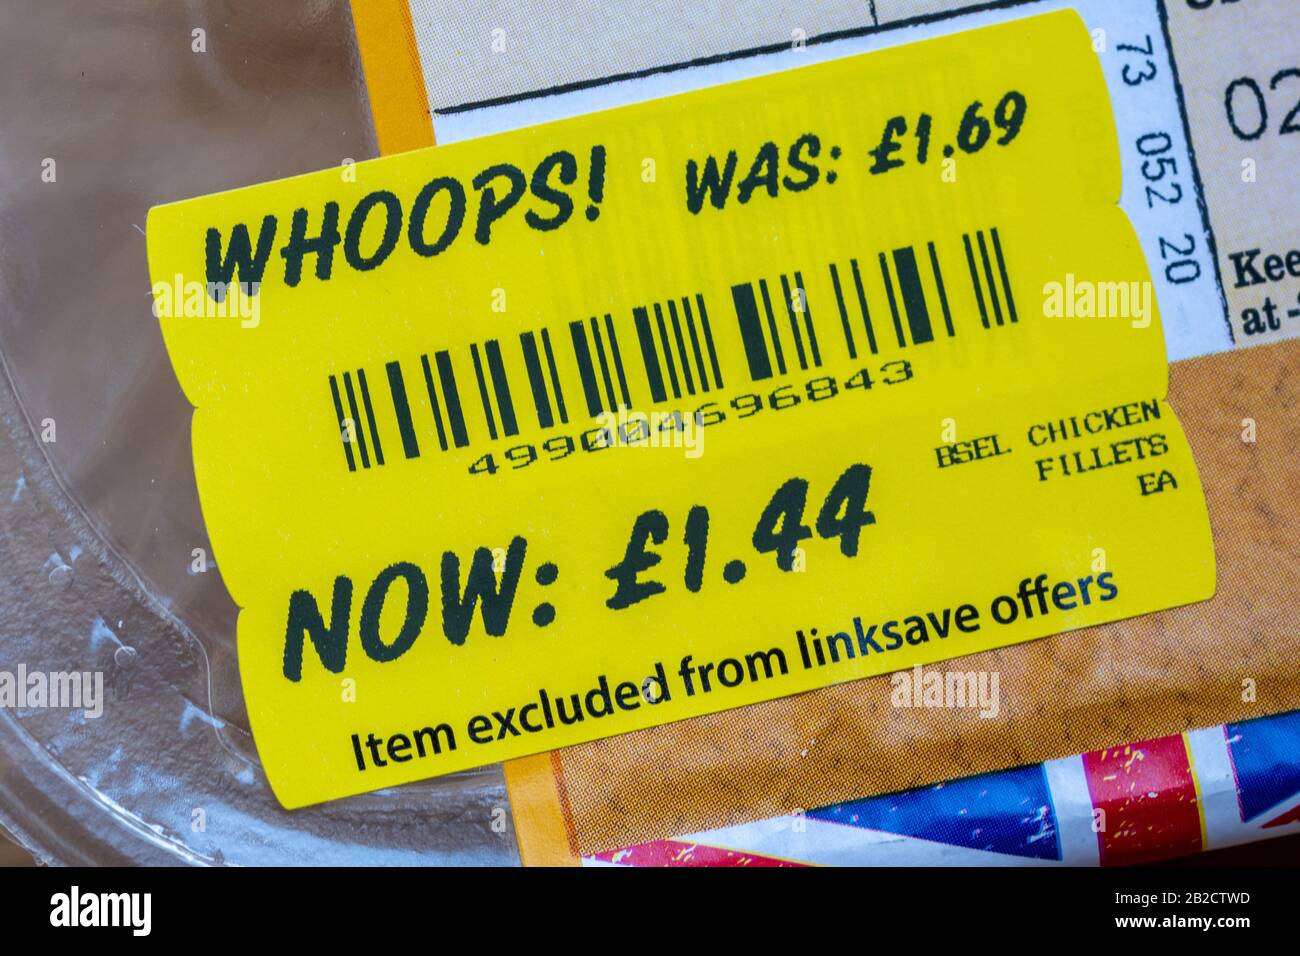 Etiquetado de alimentos a precio reducido, etiqueta amarilla de supermercado en paquete de piezas de pollo Foto de stock